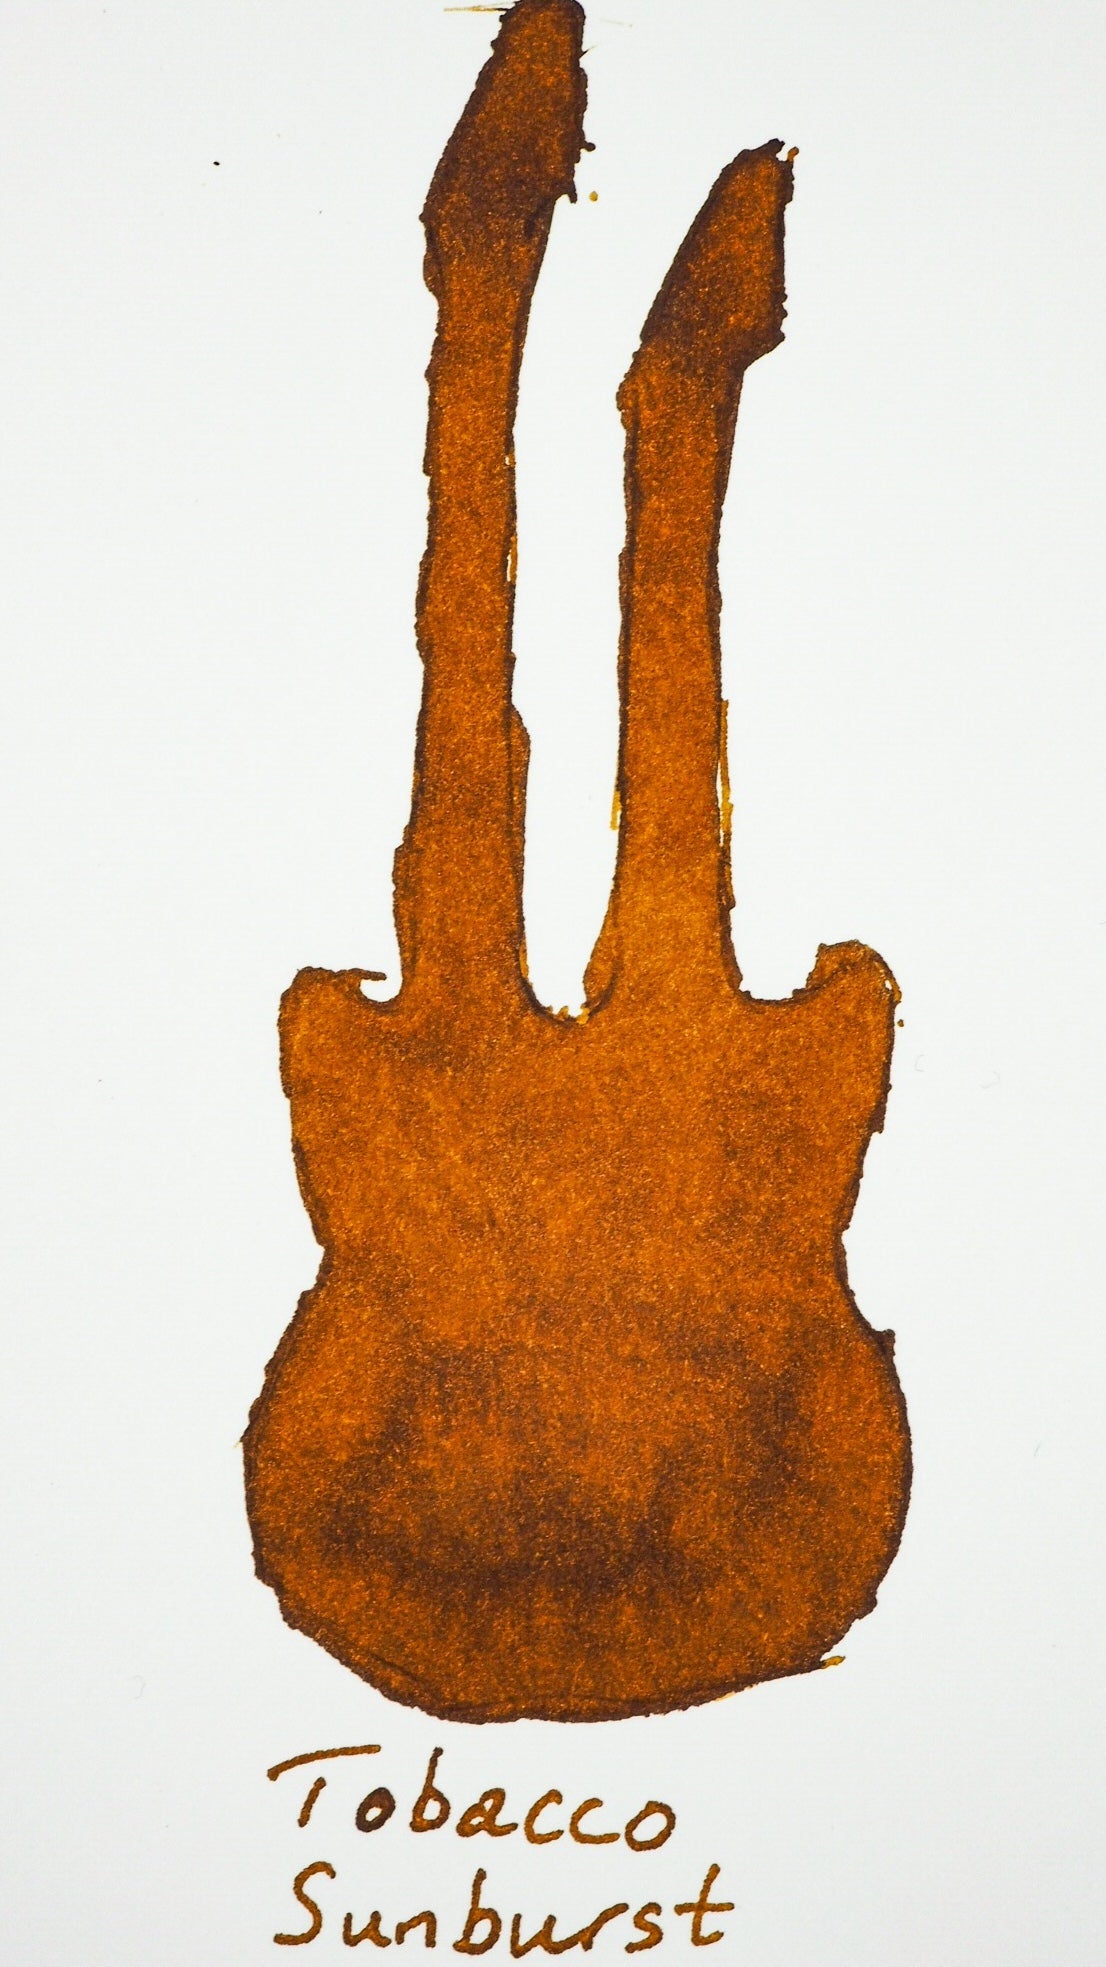 Swatch von Diamine Tobacco Sunburst in Form einer Gitarre.